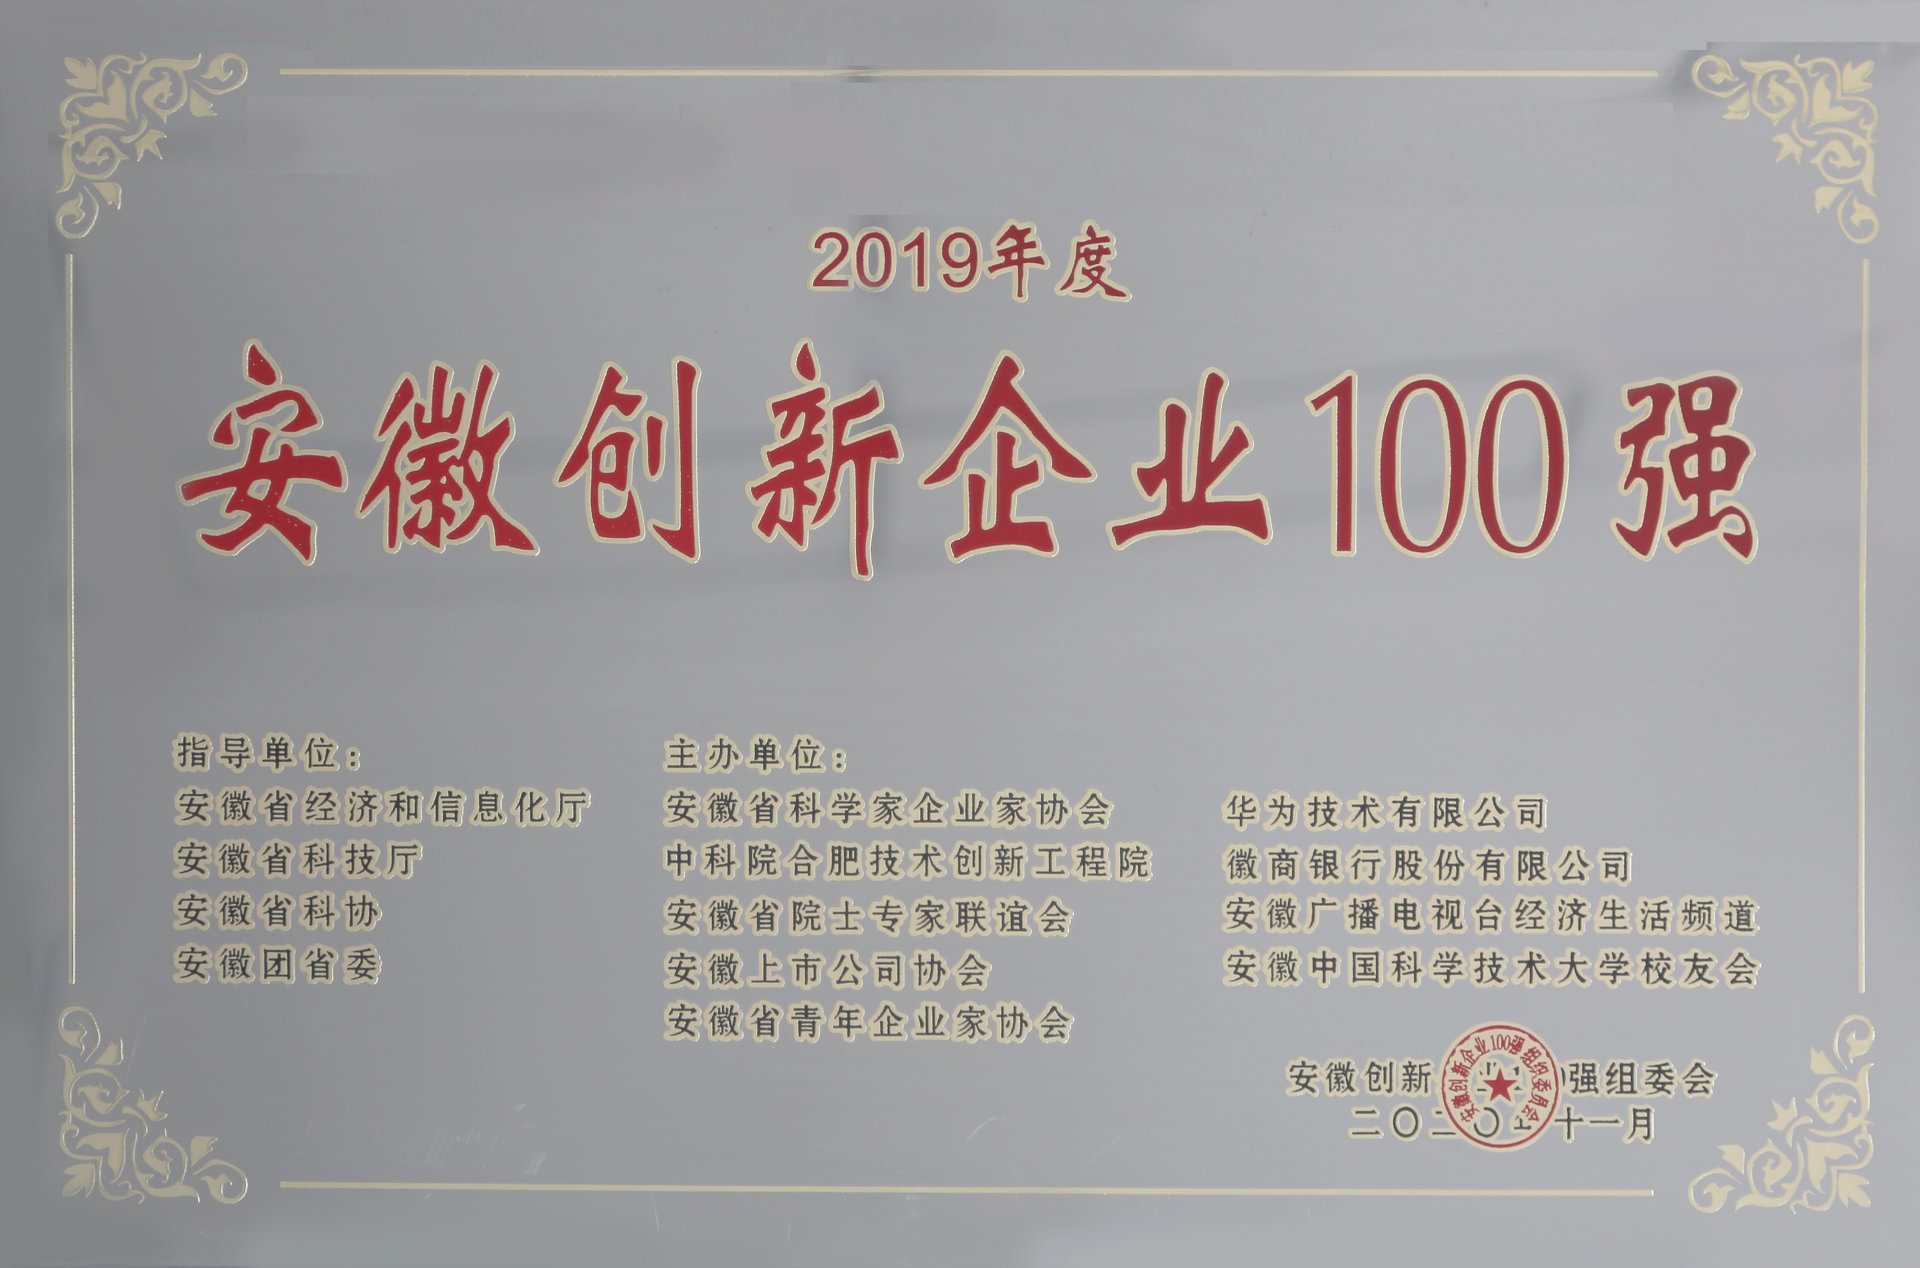 2019年度“安徽创新企业100强”